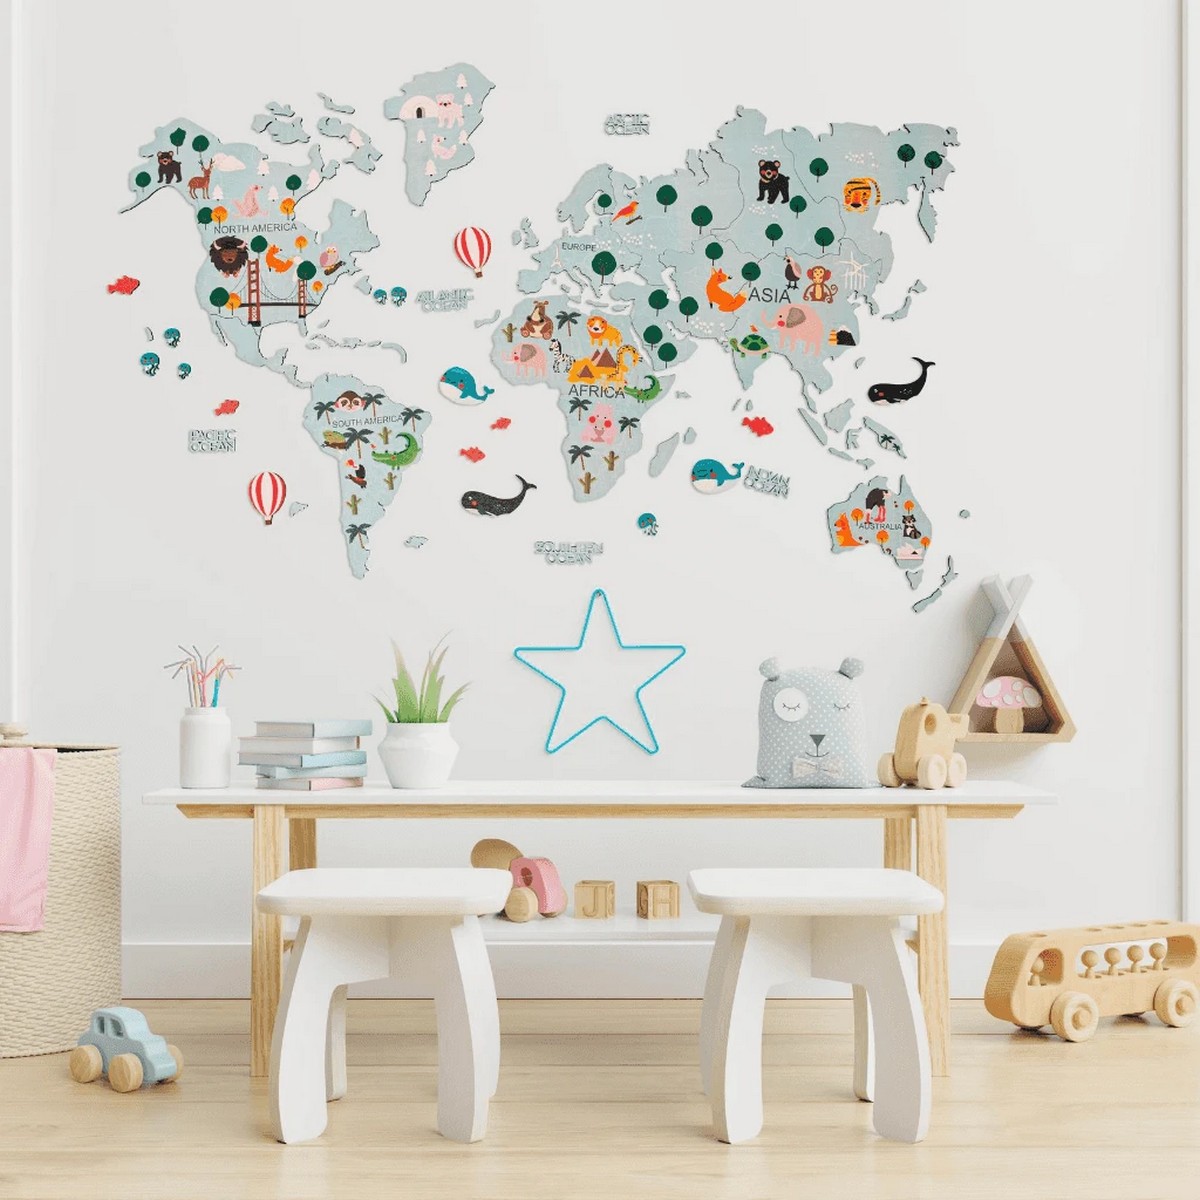 نقشه جهان برای بچه ها